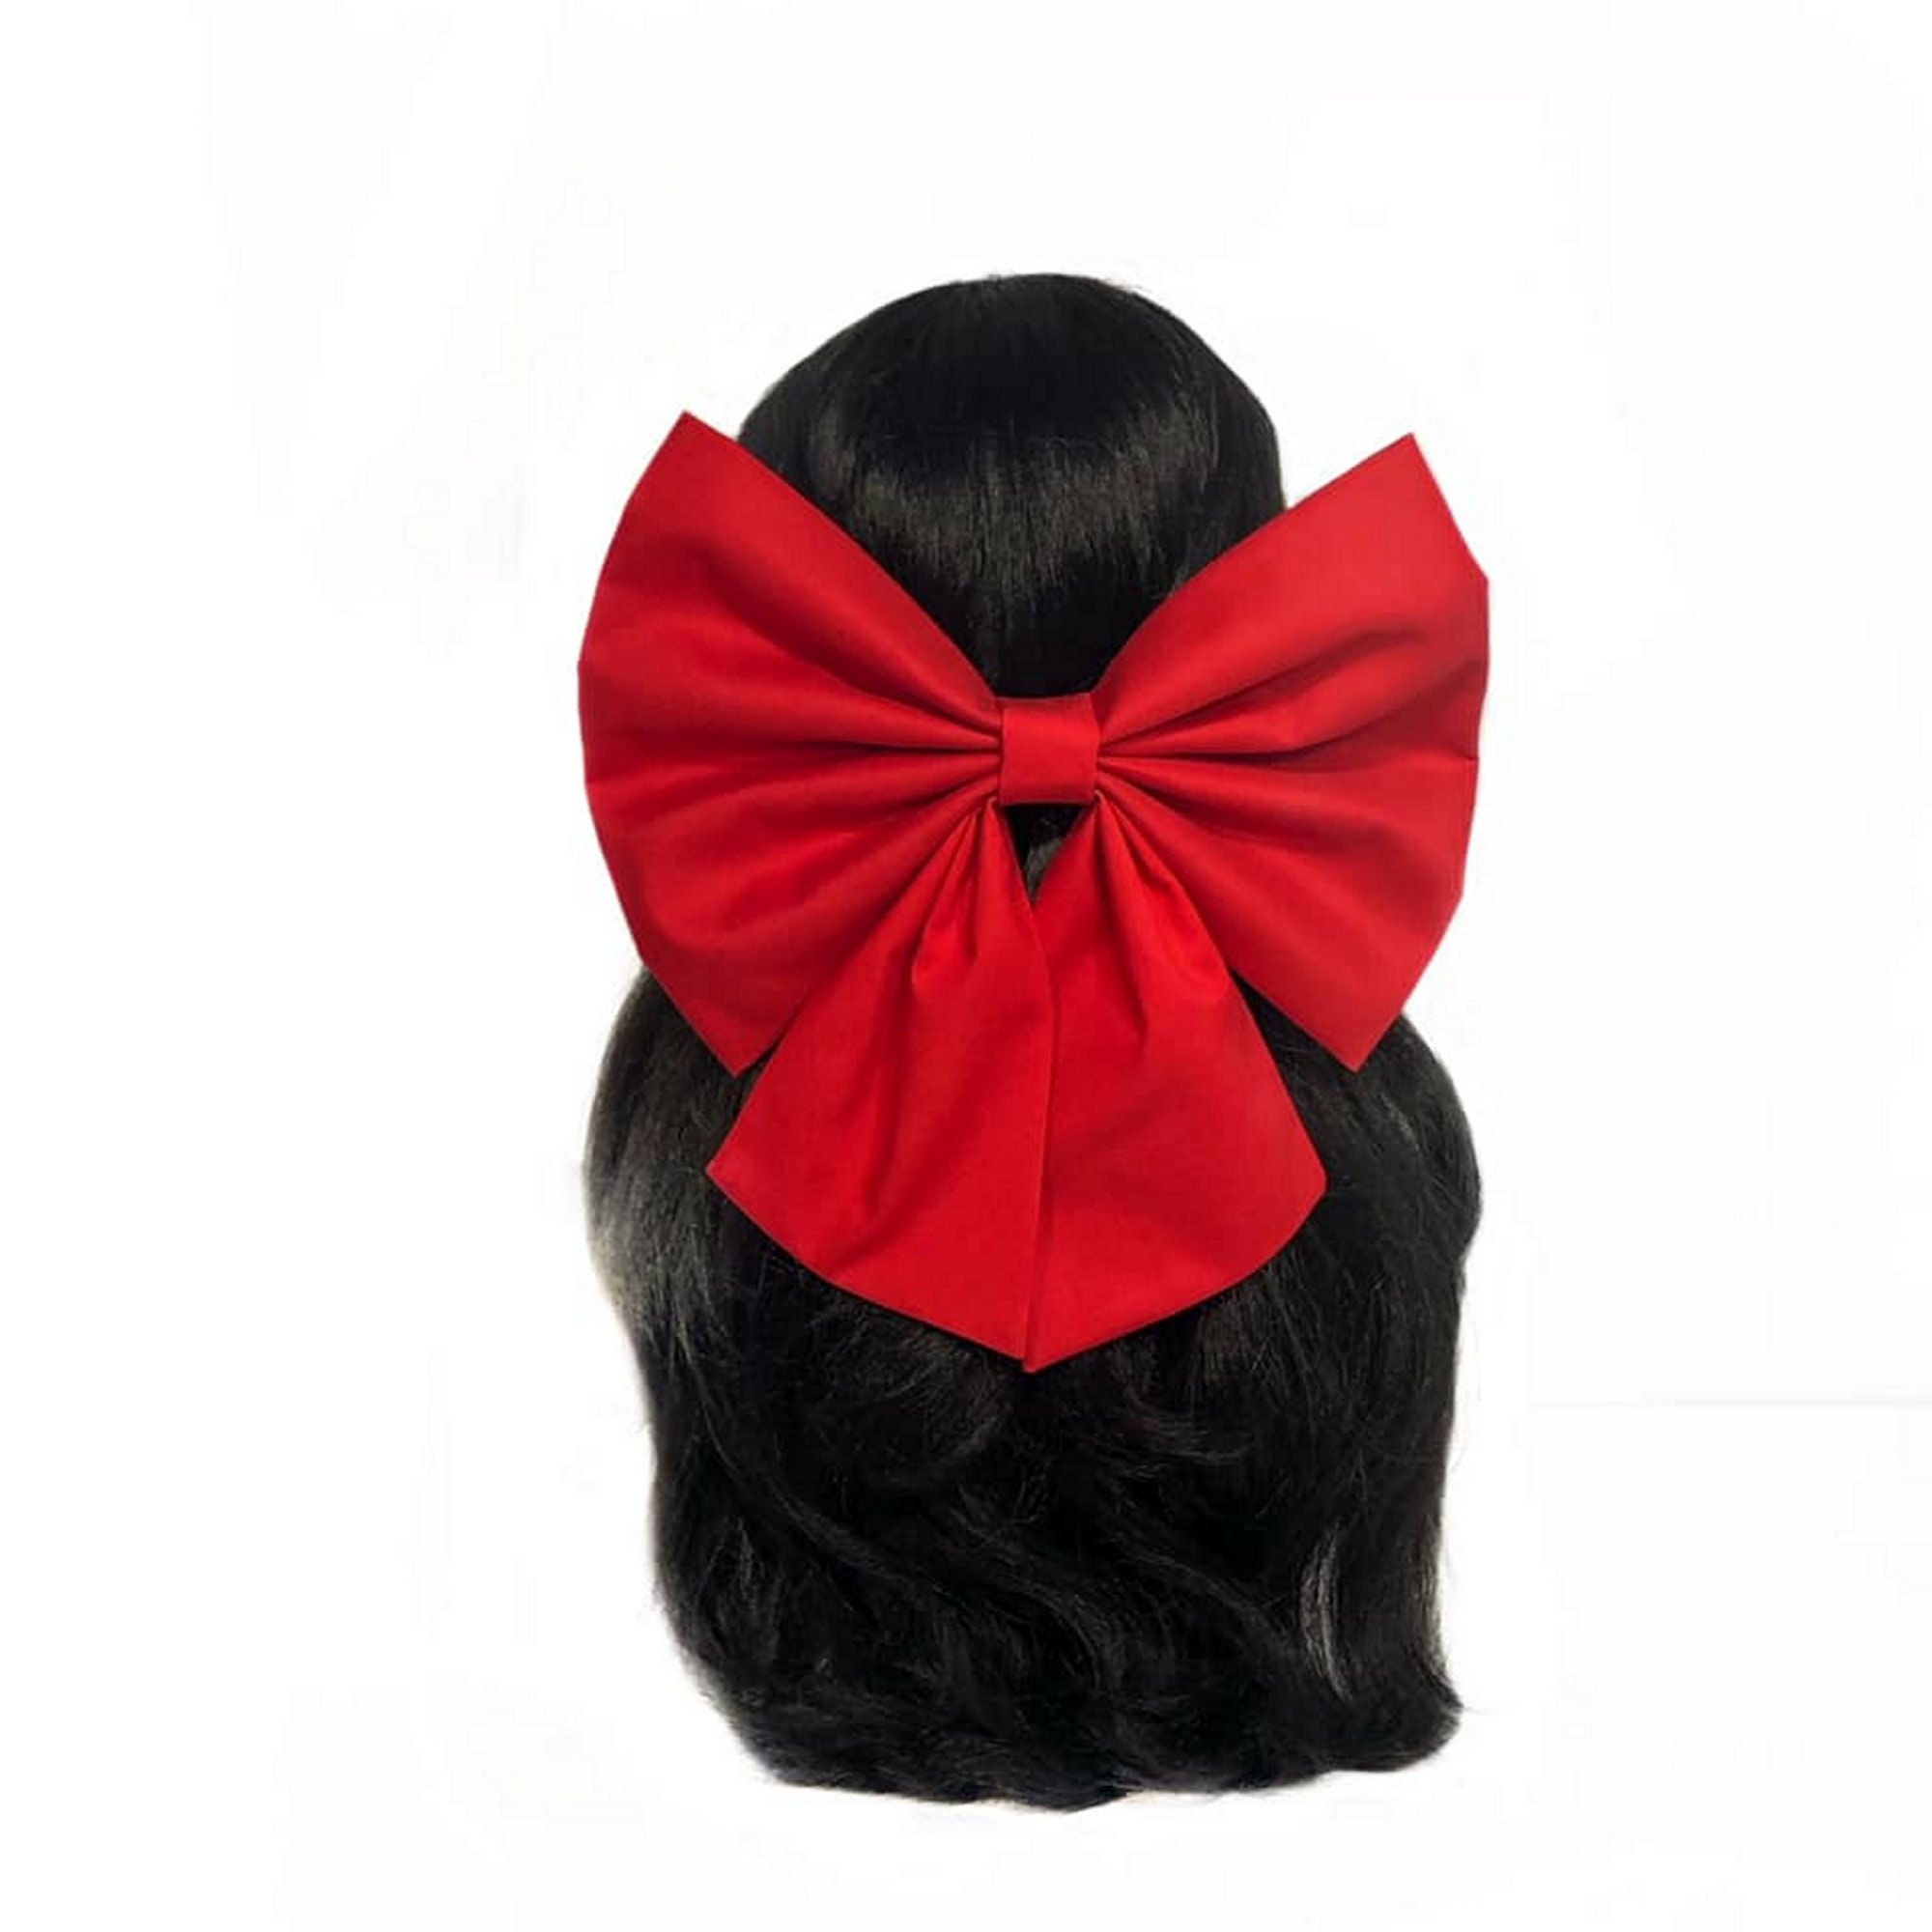 Crafty Texas Girls: DIY BIG Christmas Hair Bow